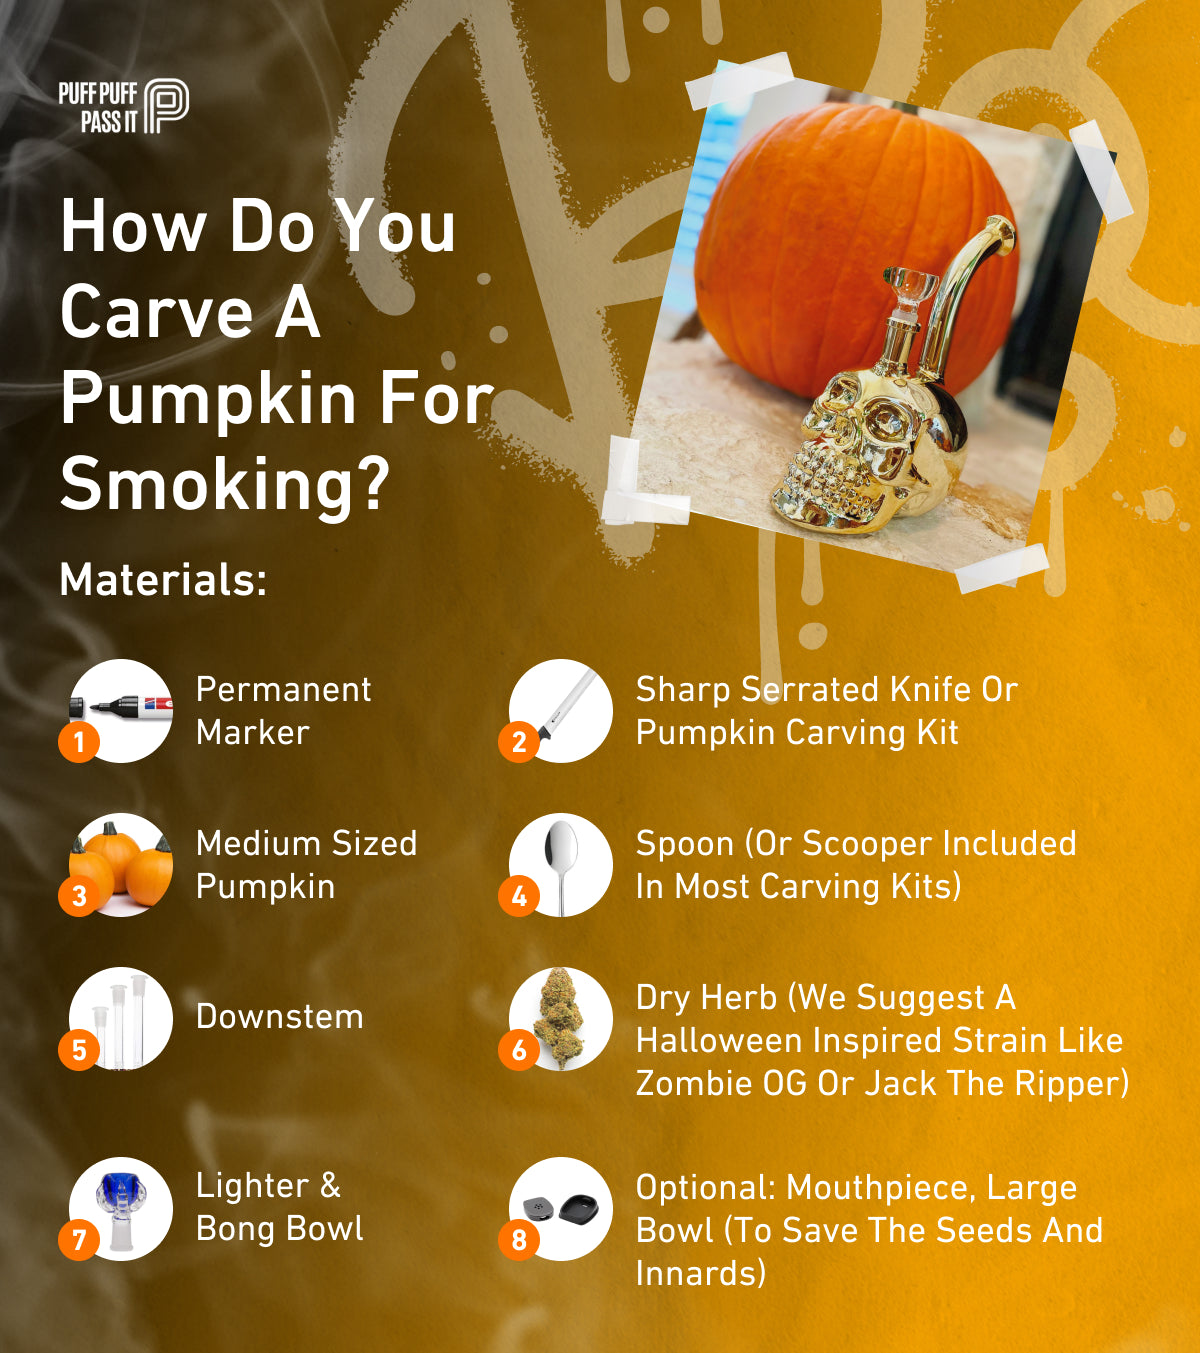 How do you carve a pumpkin for smoking?